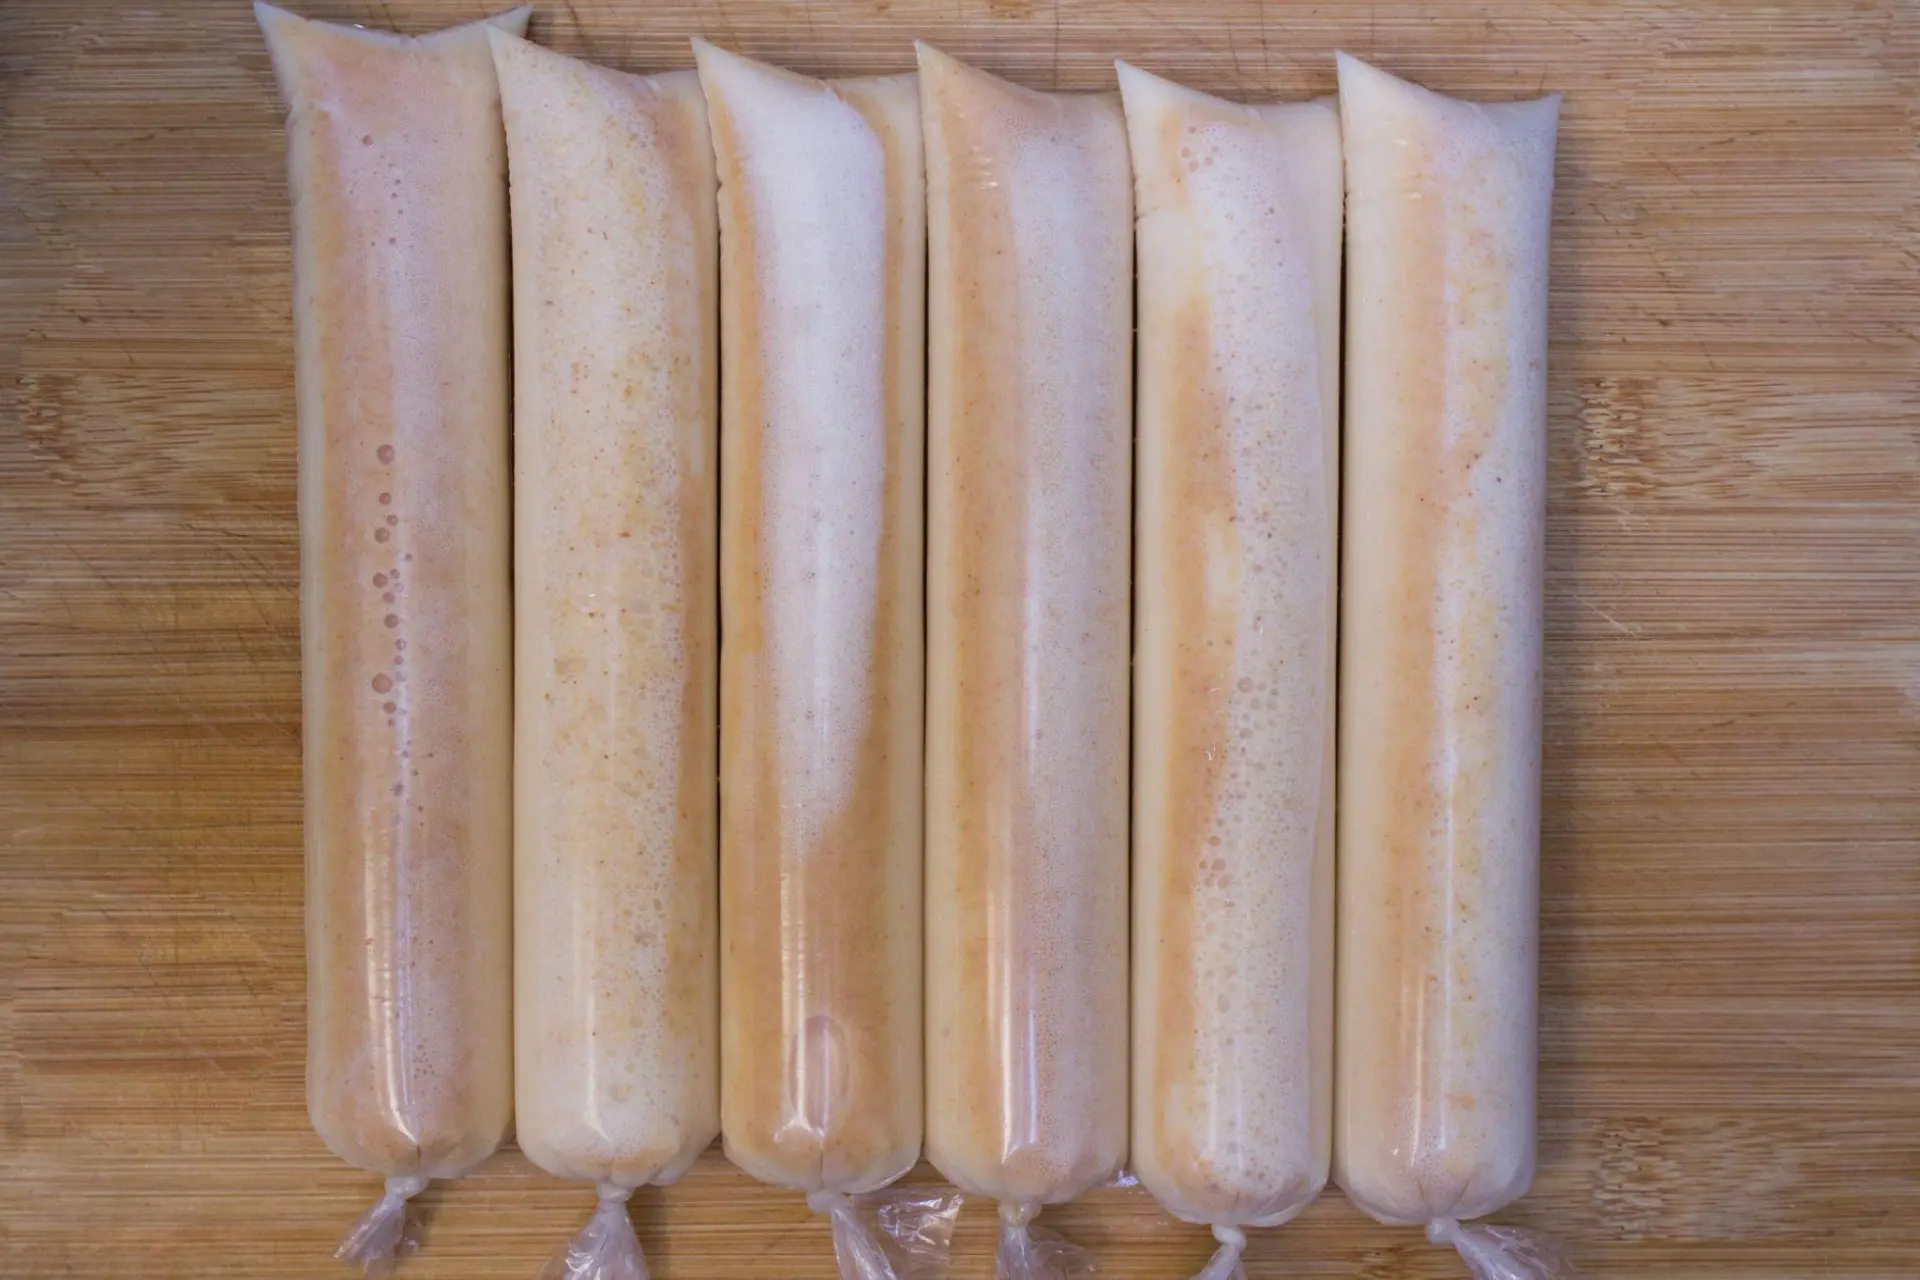 Geladinhos de amendoim congelados em saquinhos transparentes